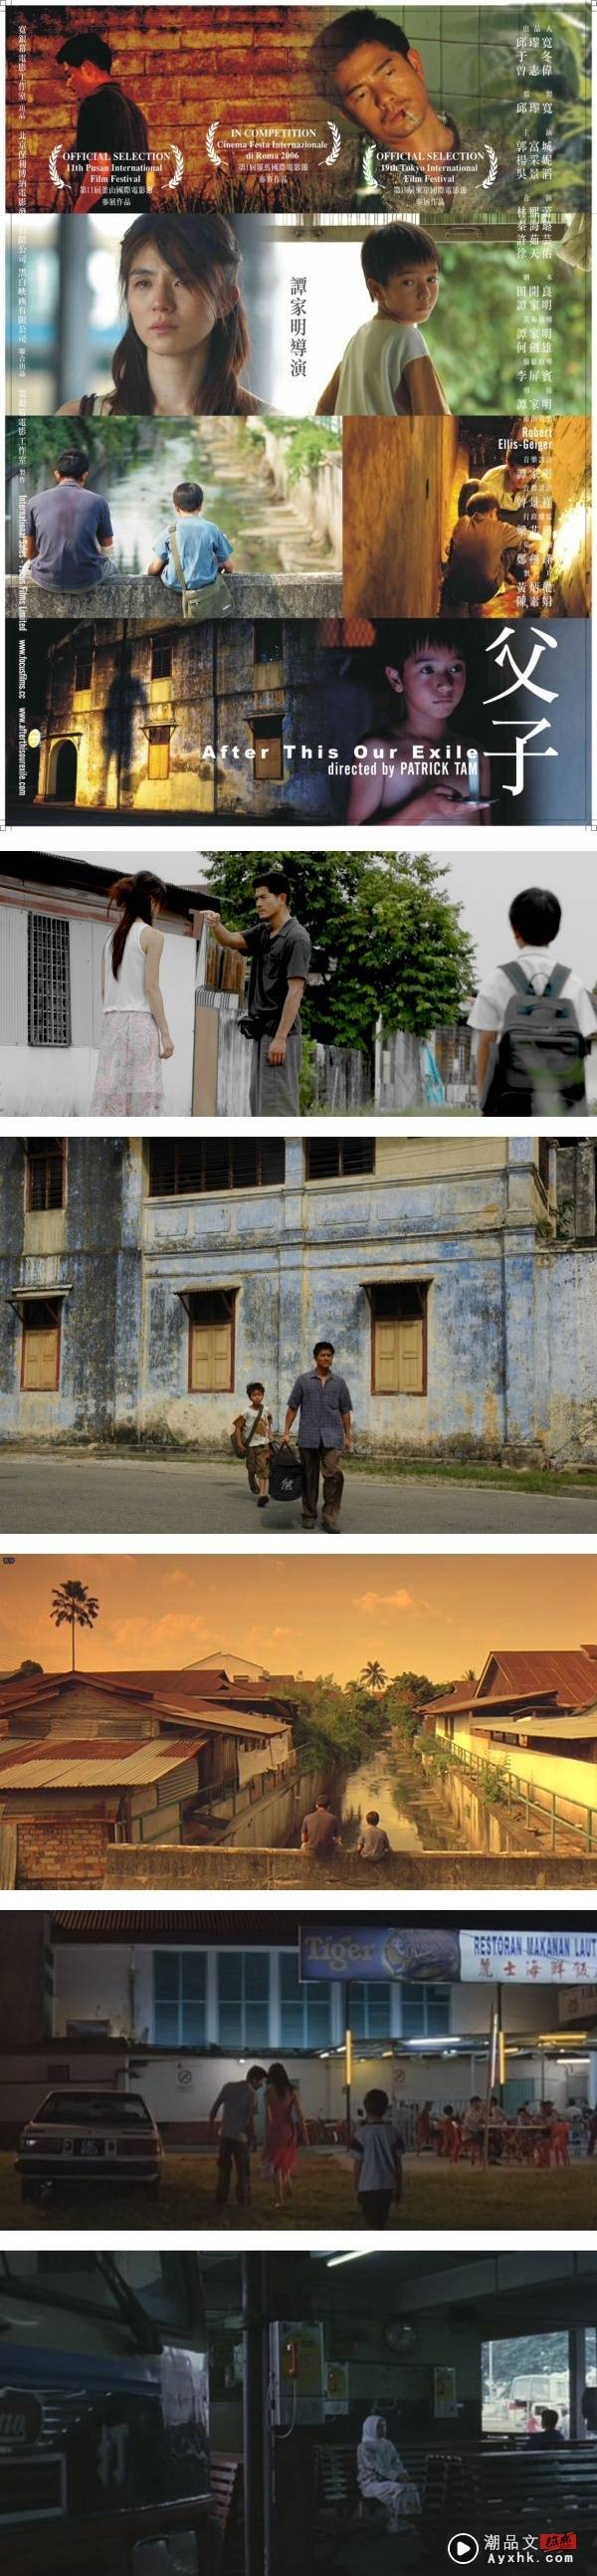 盘点在马来西亚取景的五部电影！《色戒》、《父子》都选择在怡保拍摄 娱乐资讯 图4张